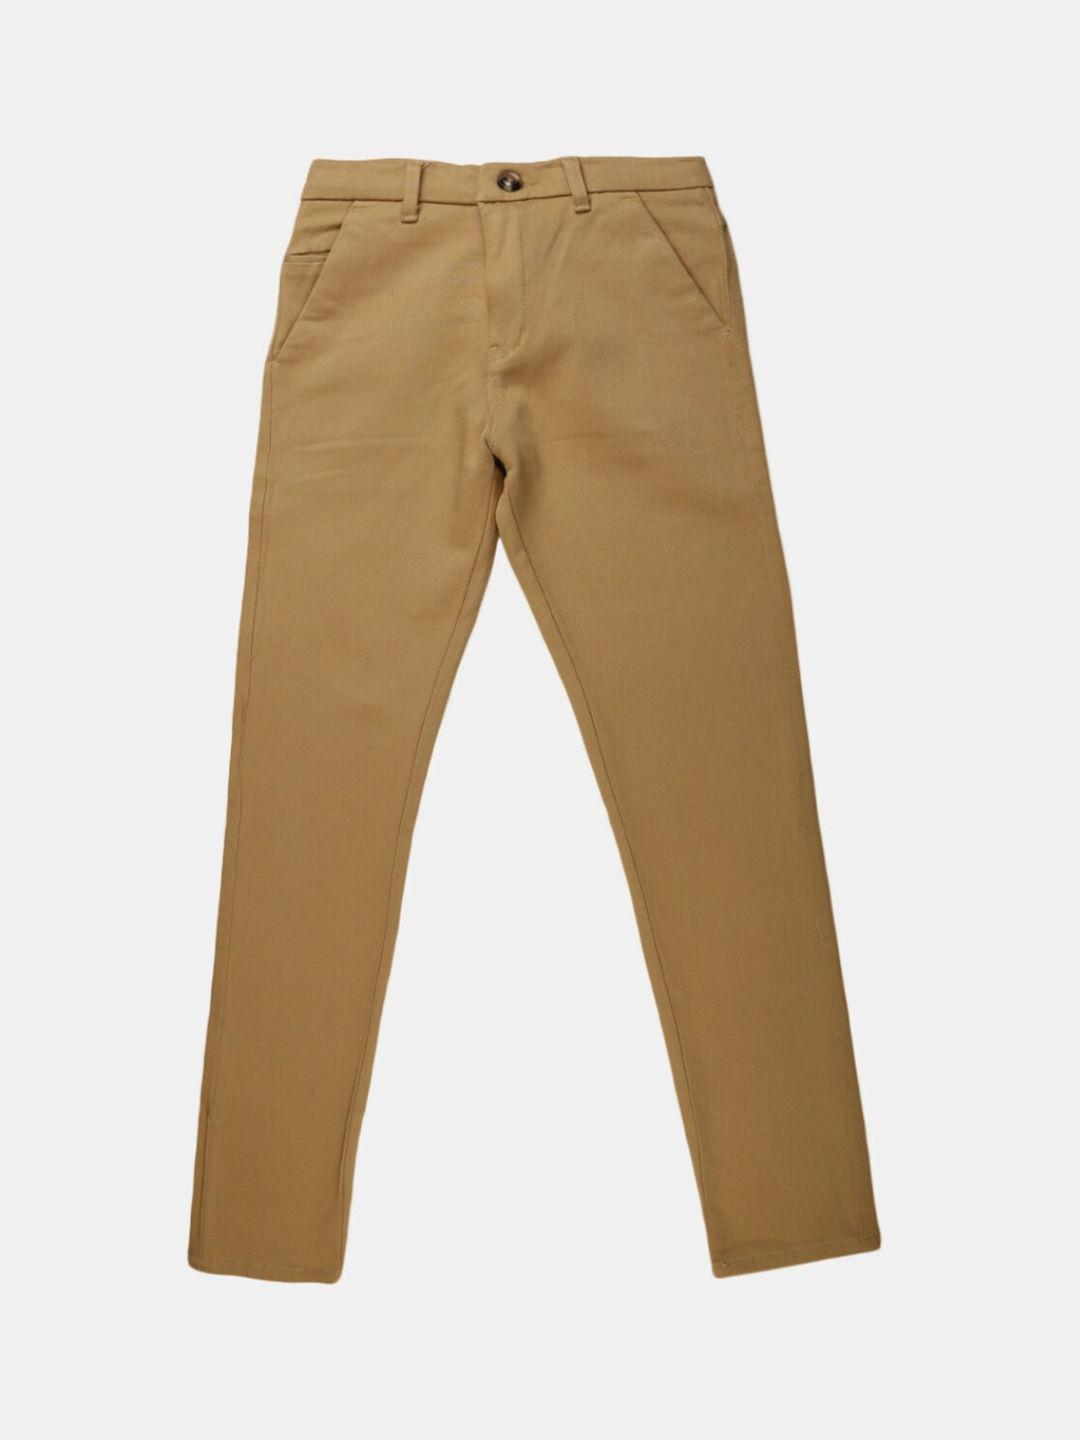 v-mart boys khaki classic chinos trousers